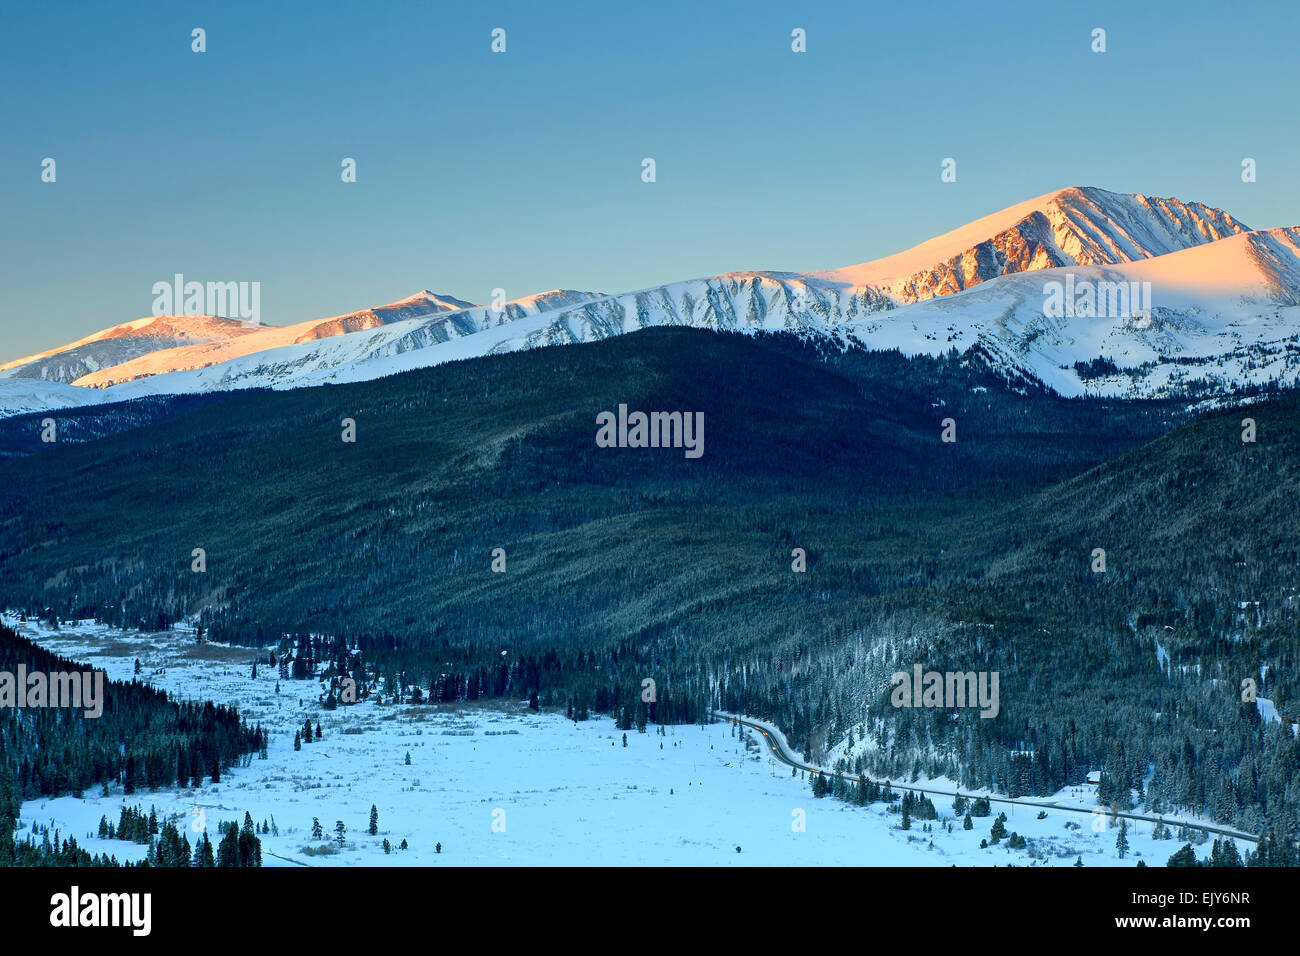 Prima luce sulla coperta di neve dilemma di picco (14,265 ft), dieci miglia intervallo e l'Oca pascolo Tarn, Boreas Pass Trail, Colorado, STATI UNITI D'AMERICA Foto Stock